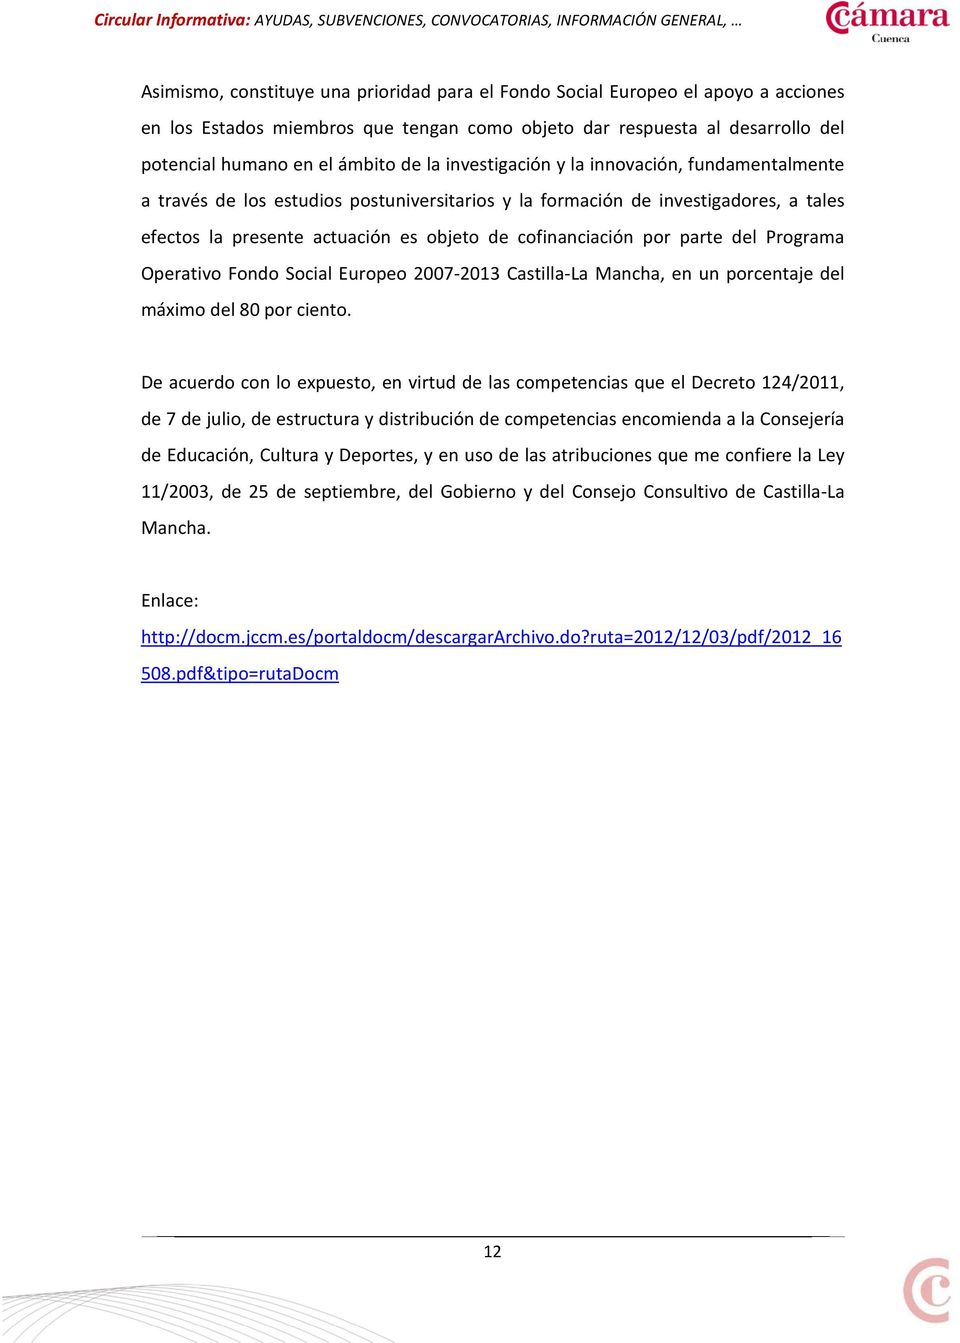 parte del Programa Operativo Fondo Social Europeo 2007-2013 Castilla-La Mancha, en un porcentaje del máximo del 80 por ciento.